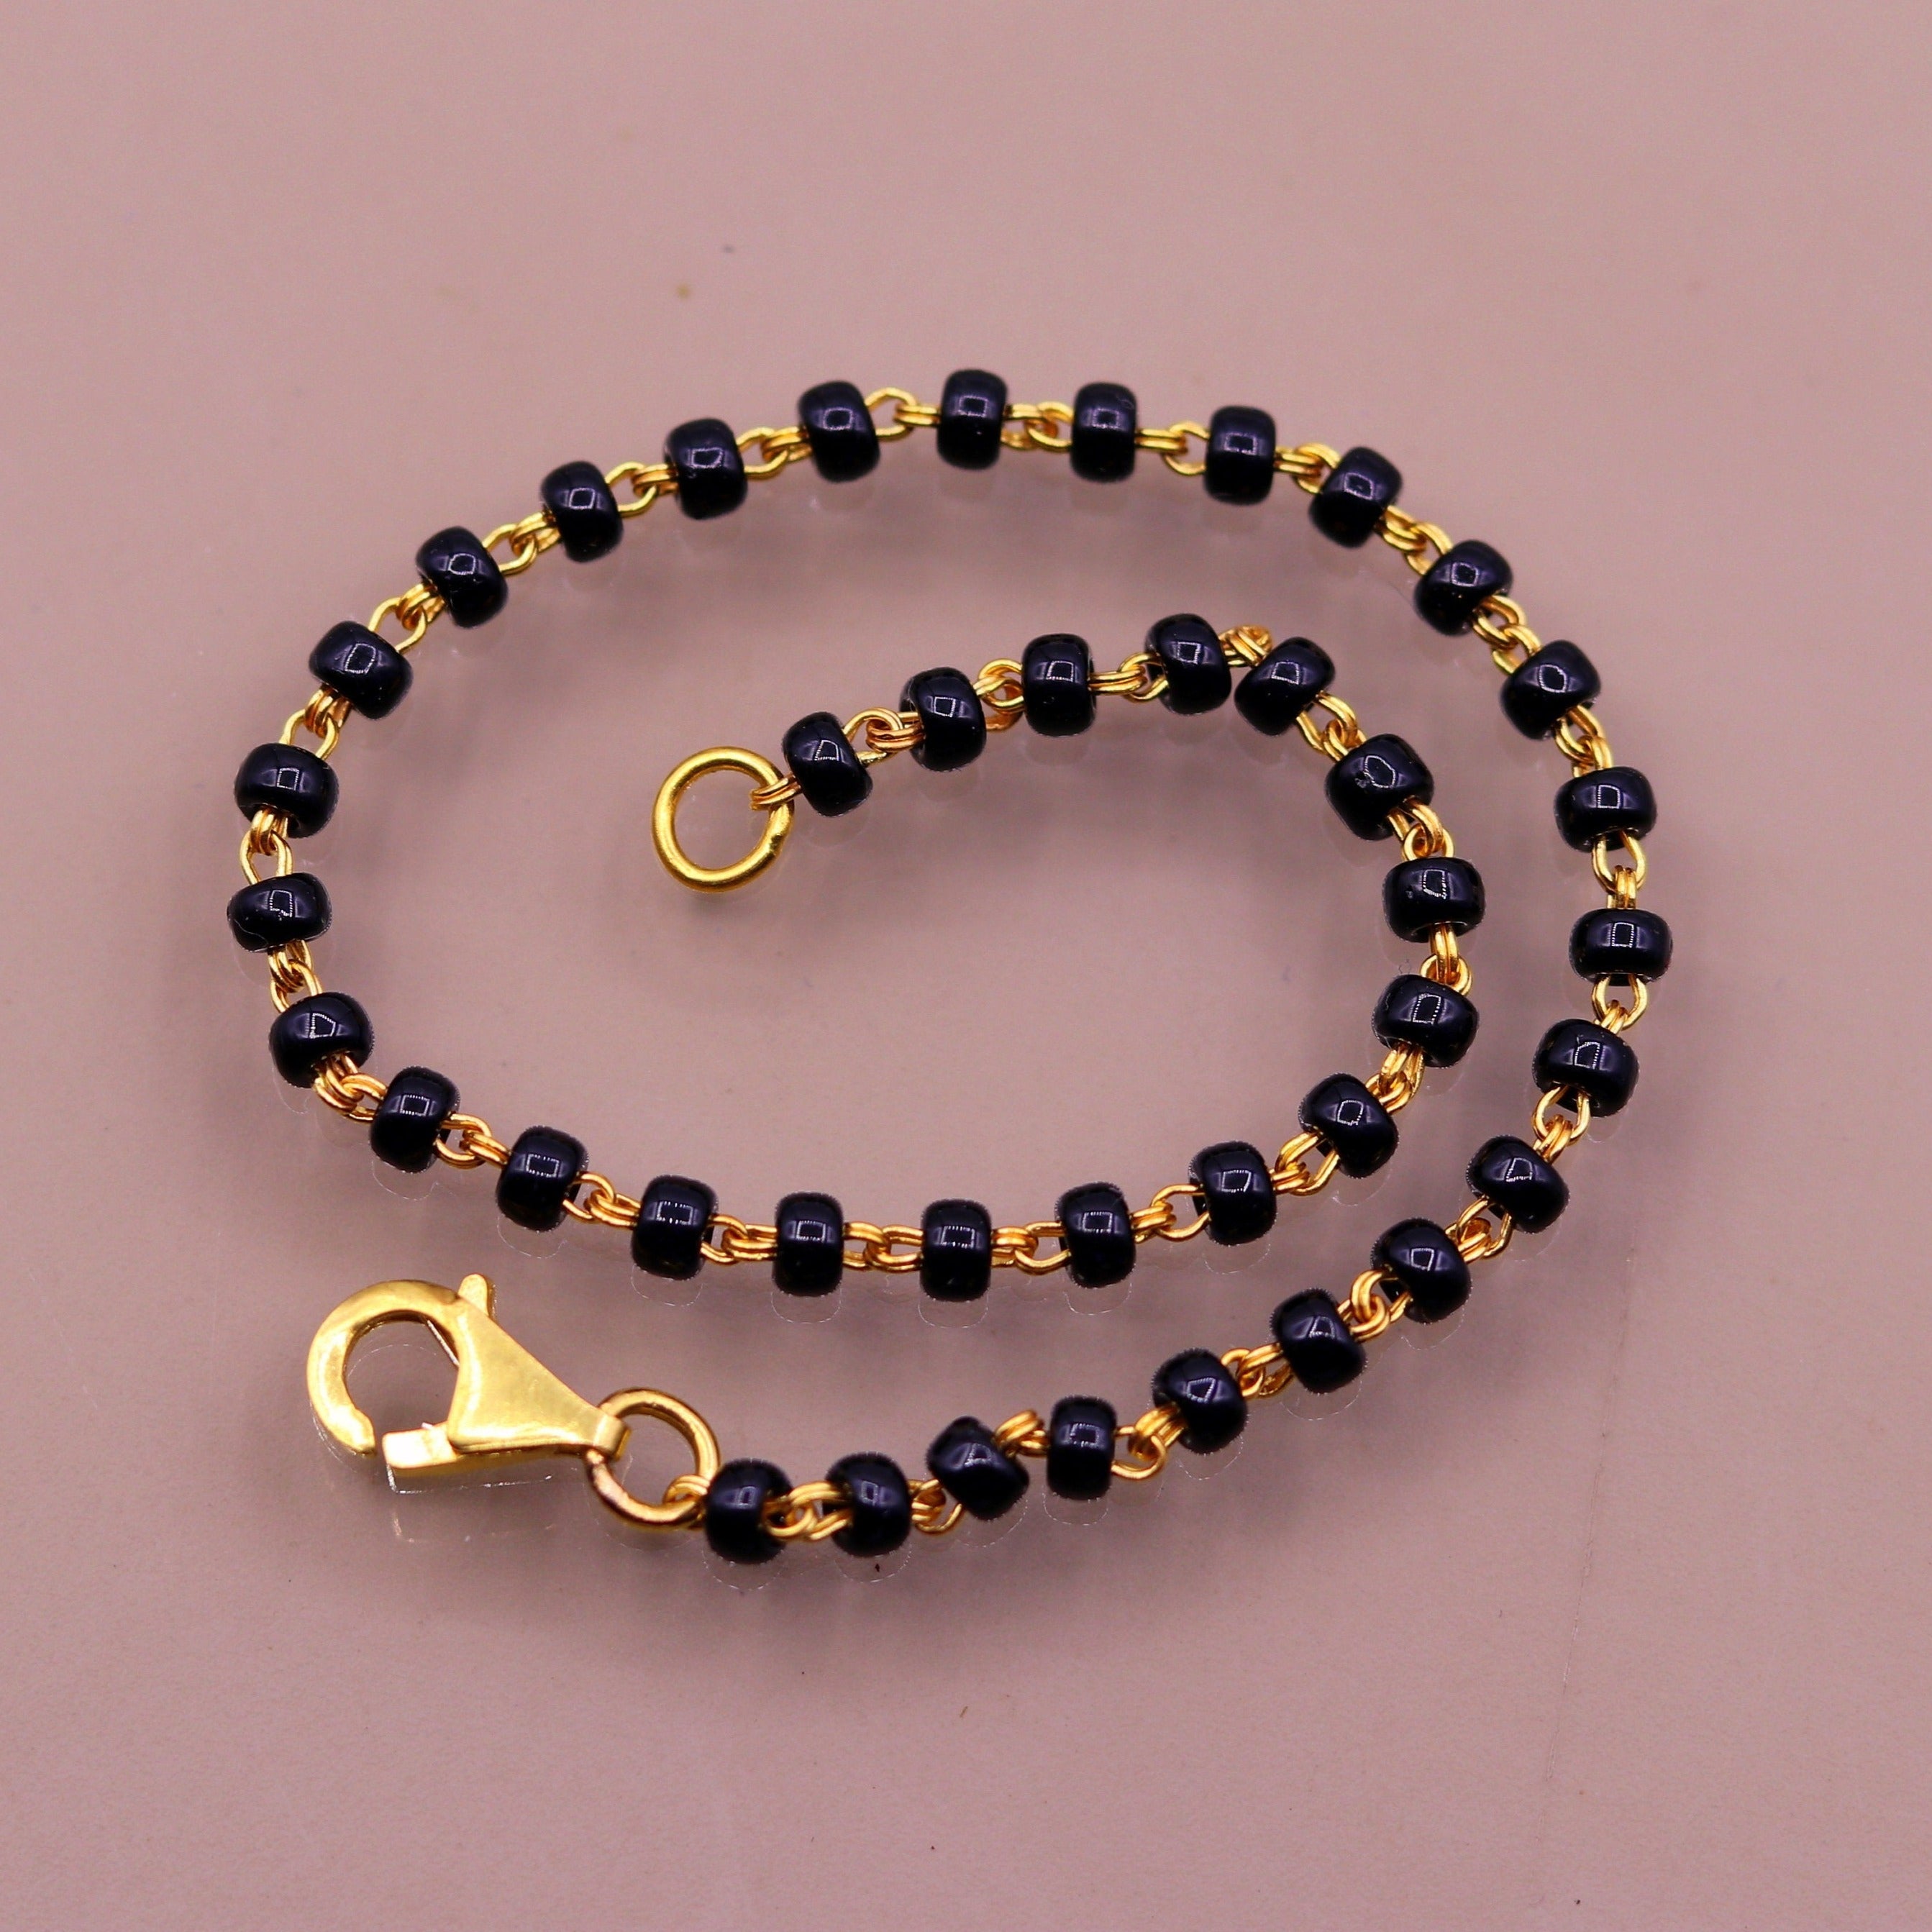 22K Black Beads Gold Bracelet - BrLa18102 - 22k gold fancy bracelet  designed with black beads and gold balls teemed together with hanging gold b